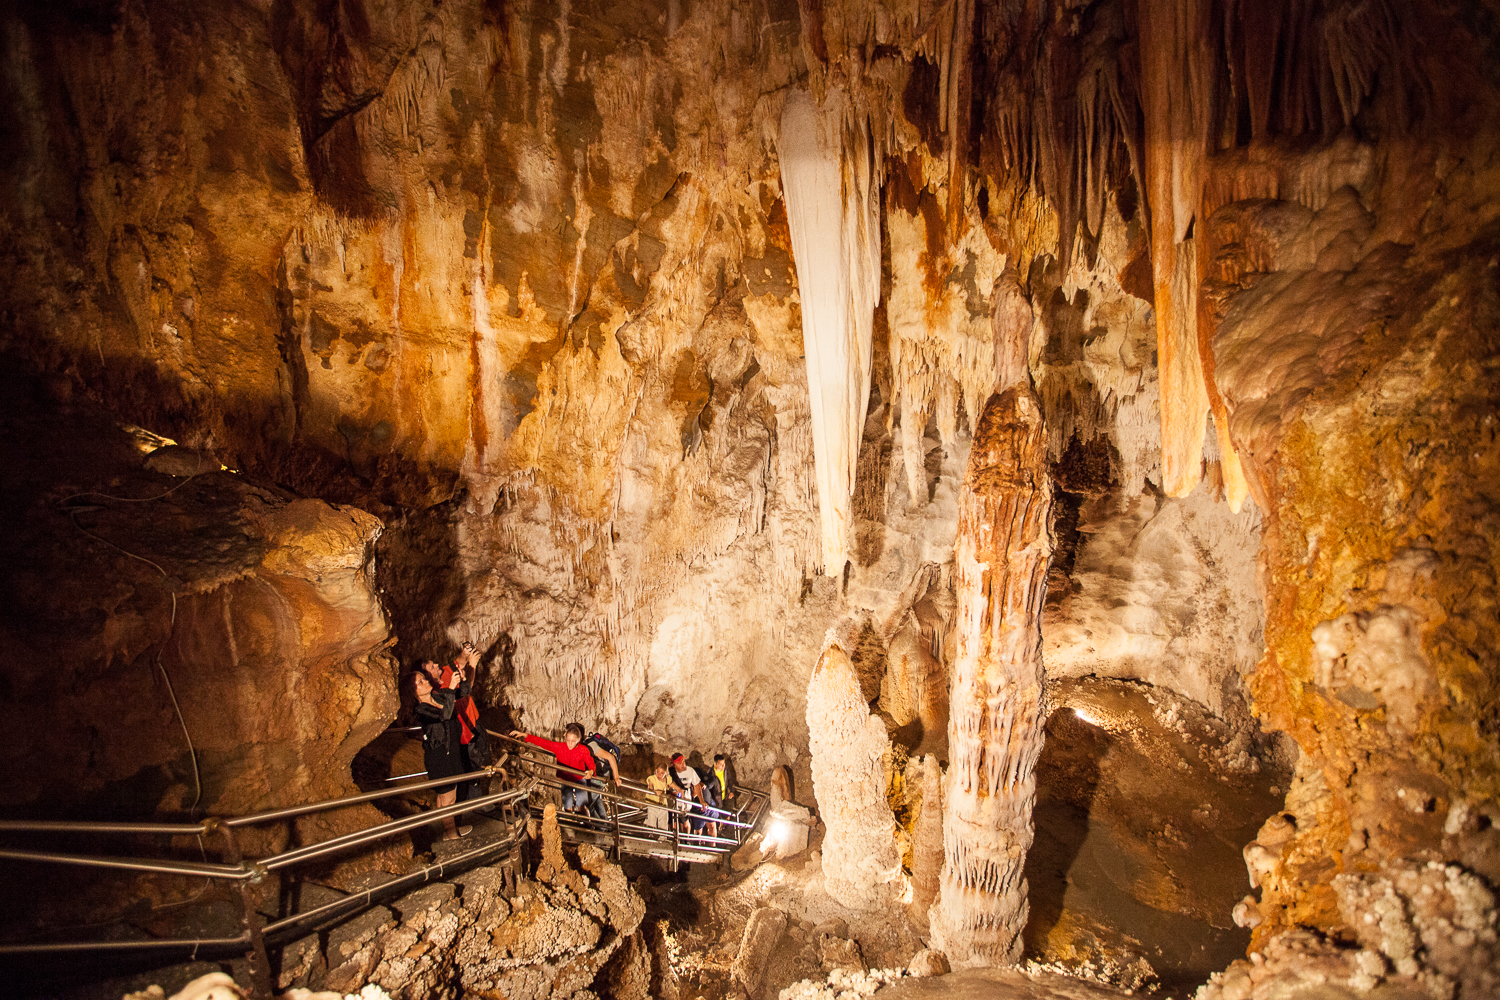 Die eindrucksvolle Grotte von Toirano ist einen Besuch absolut wert.